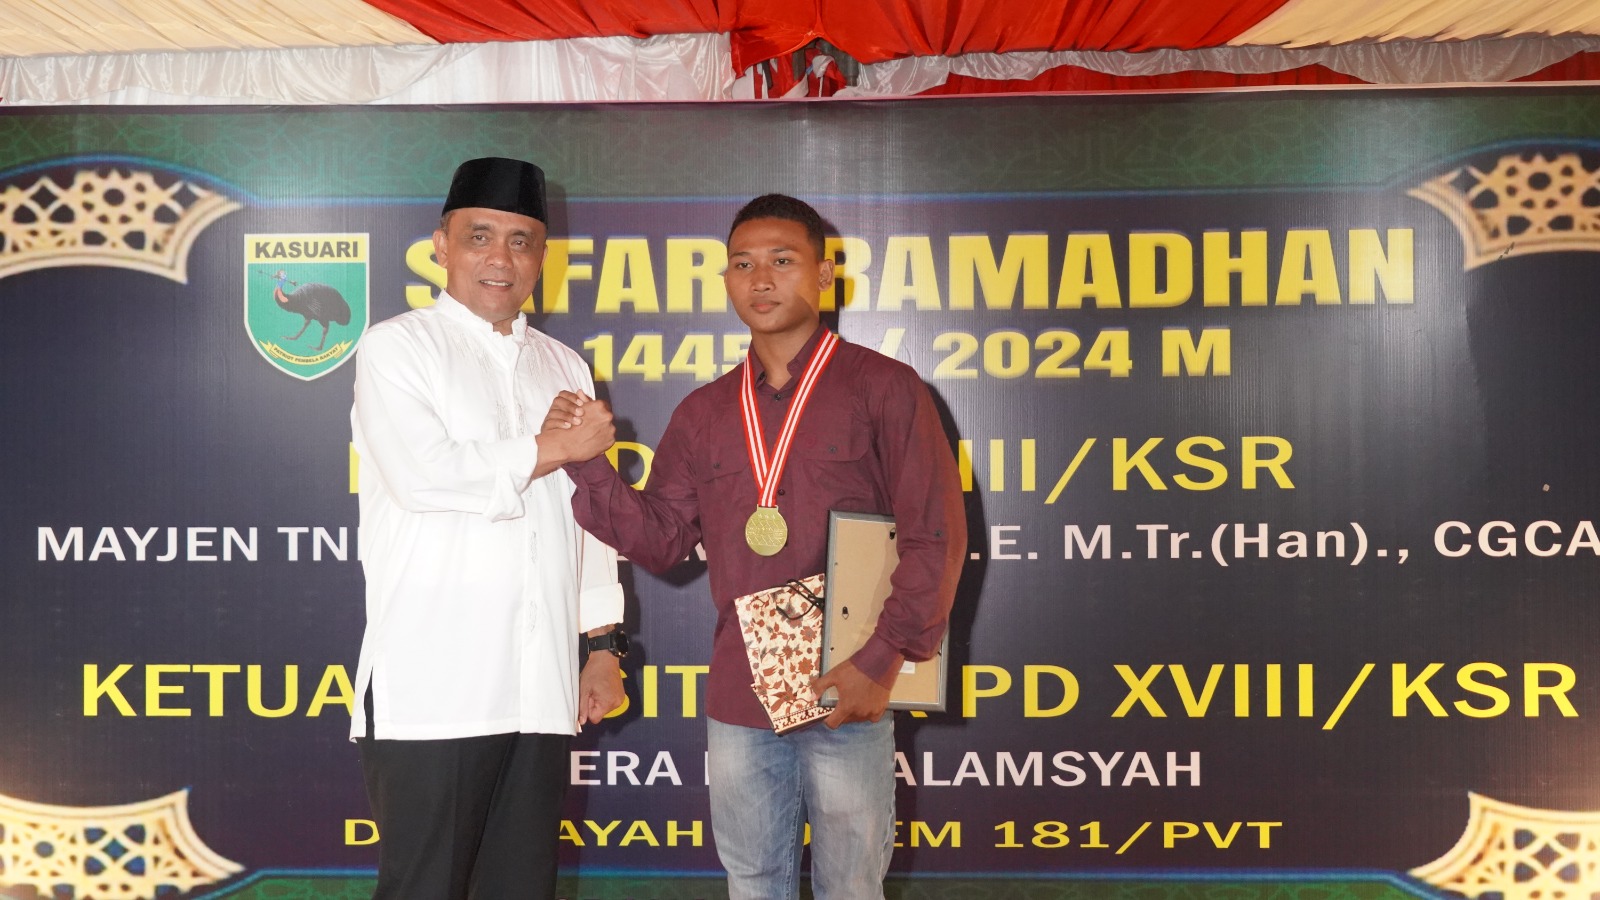 Pangdam Beri Penghargaan Kepada Prajurit Kodam Kasuari Asal Kalimantan Yang Menang MMA Kelas Strawweight 52